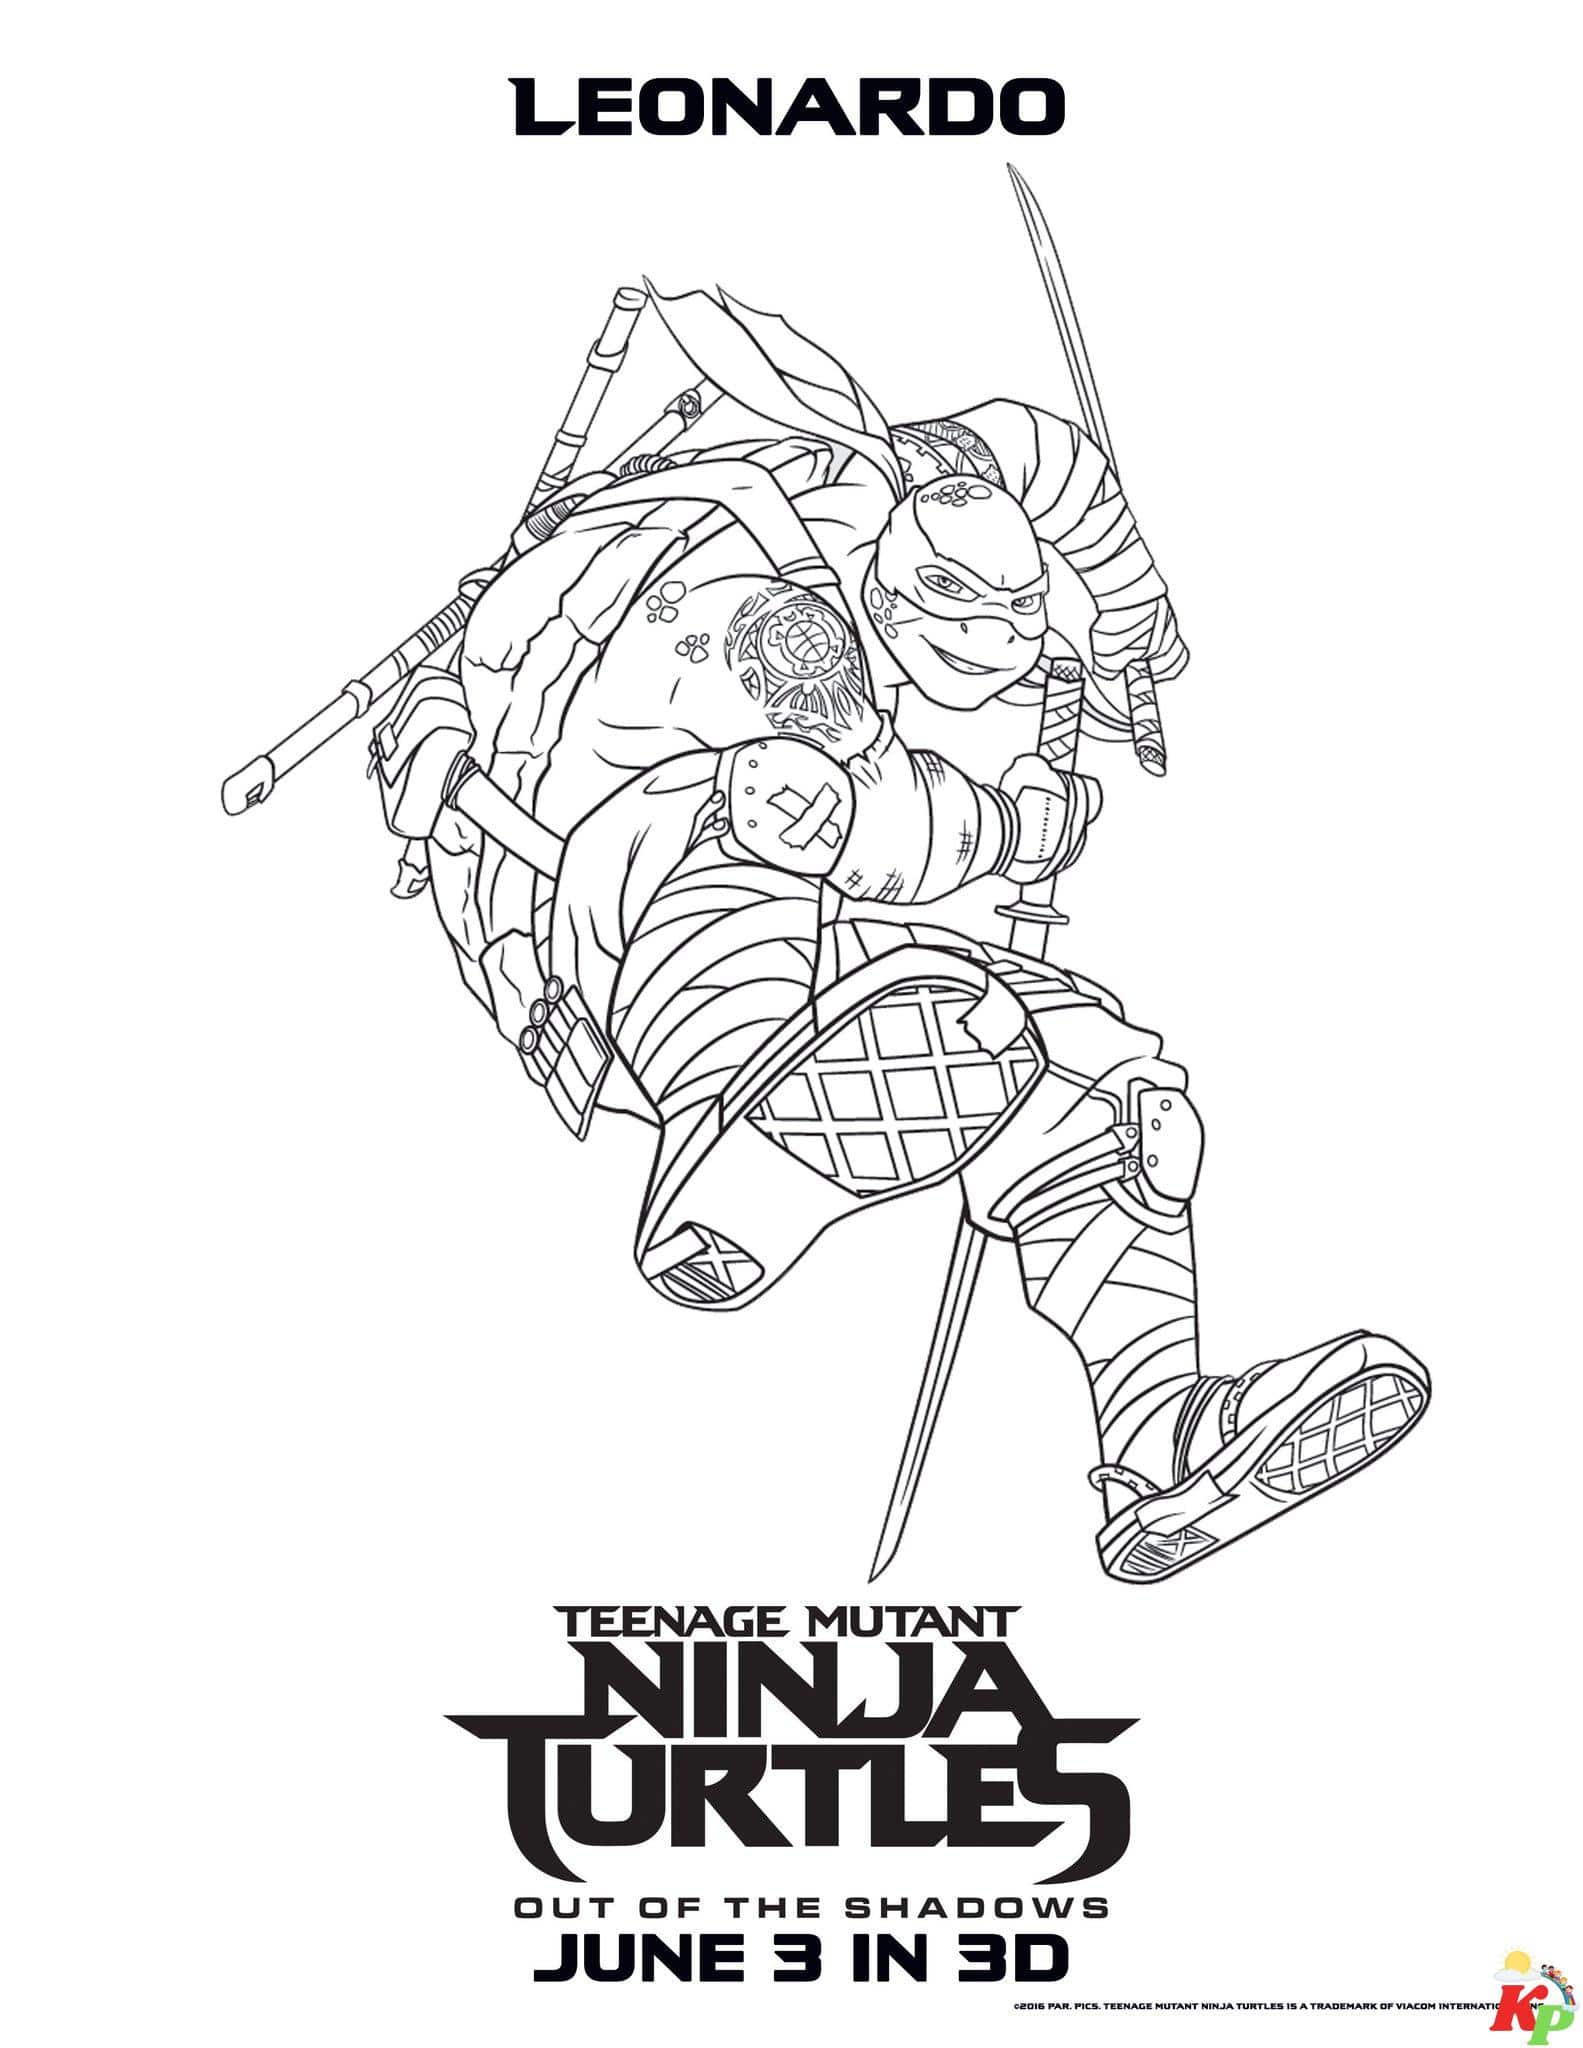 Ninja turtles 4